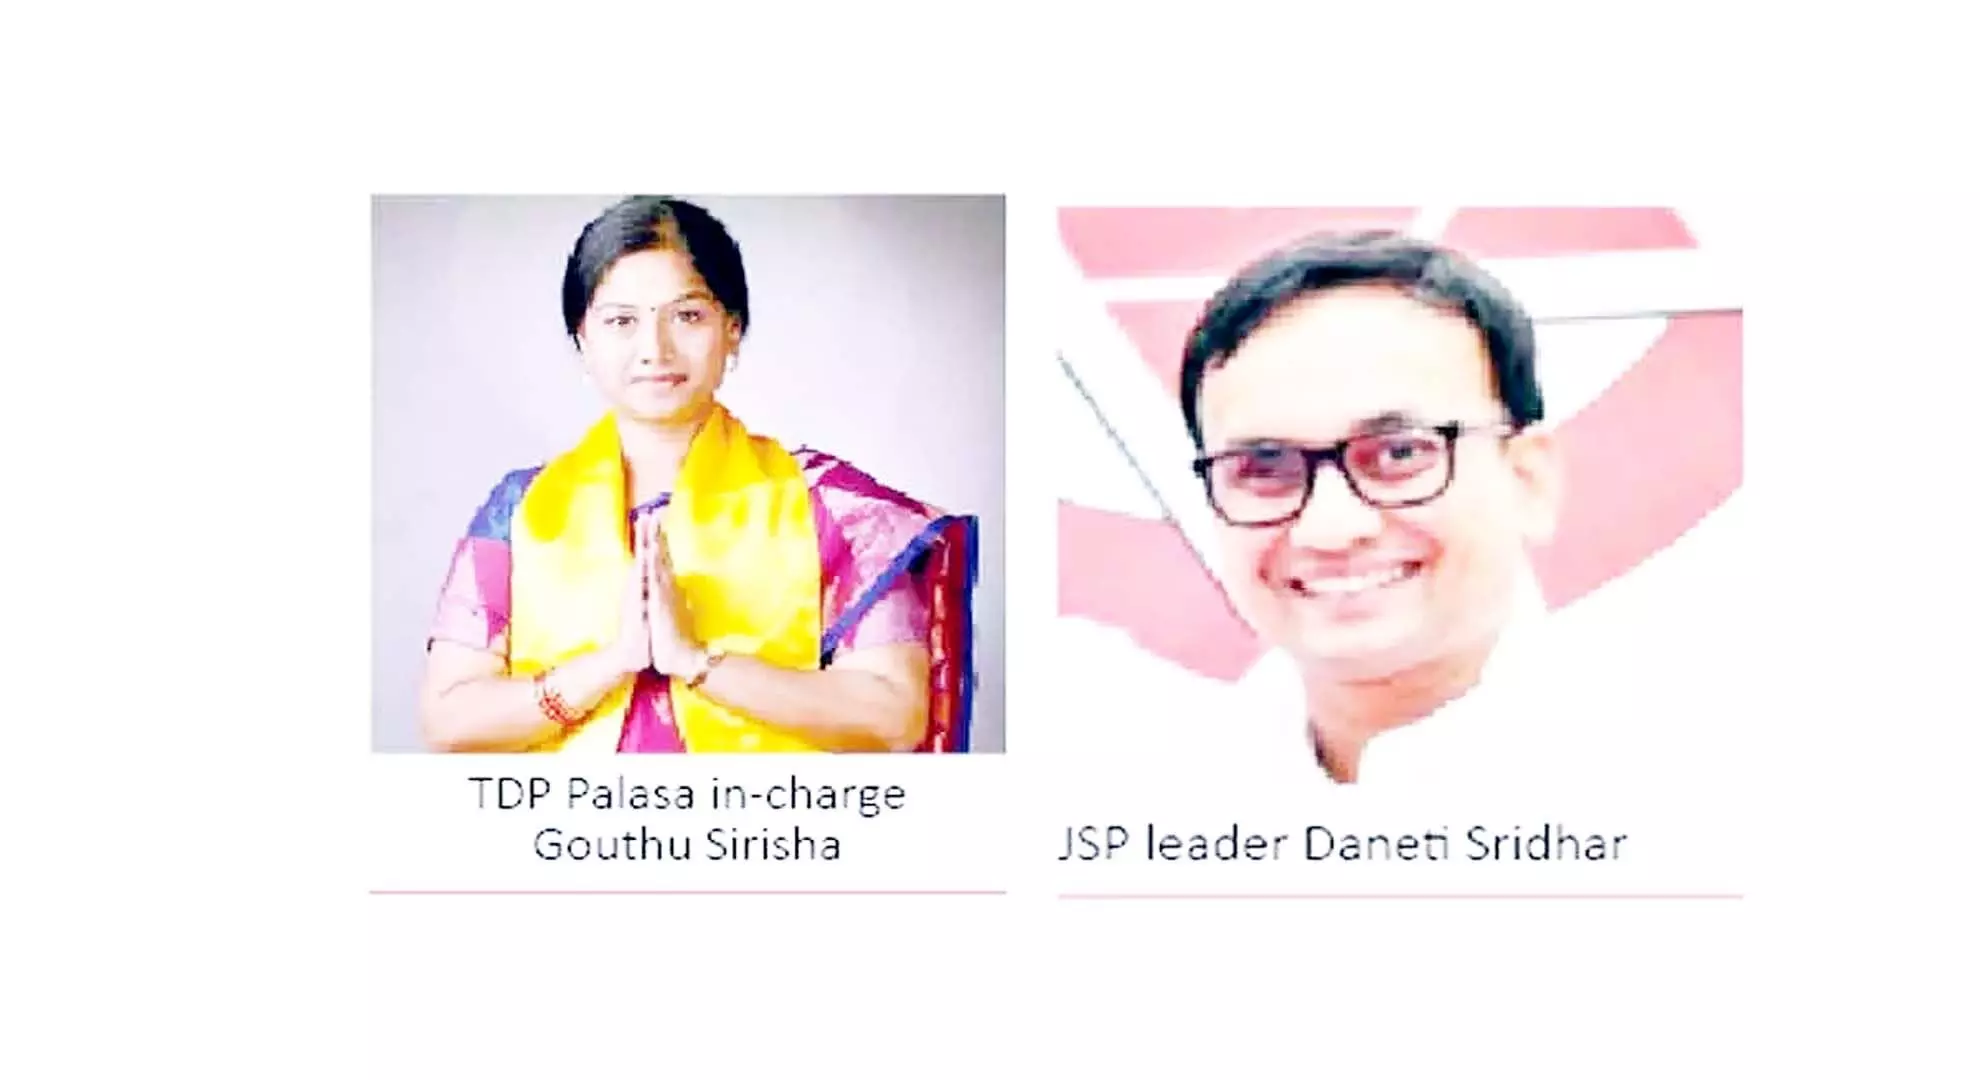 सिरिशा को जारी रखने के टीडीपी के कदम ने जेएसपी नेताओं की उम्मीदों पर पानी फेर दिया